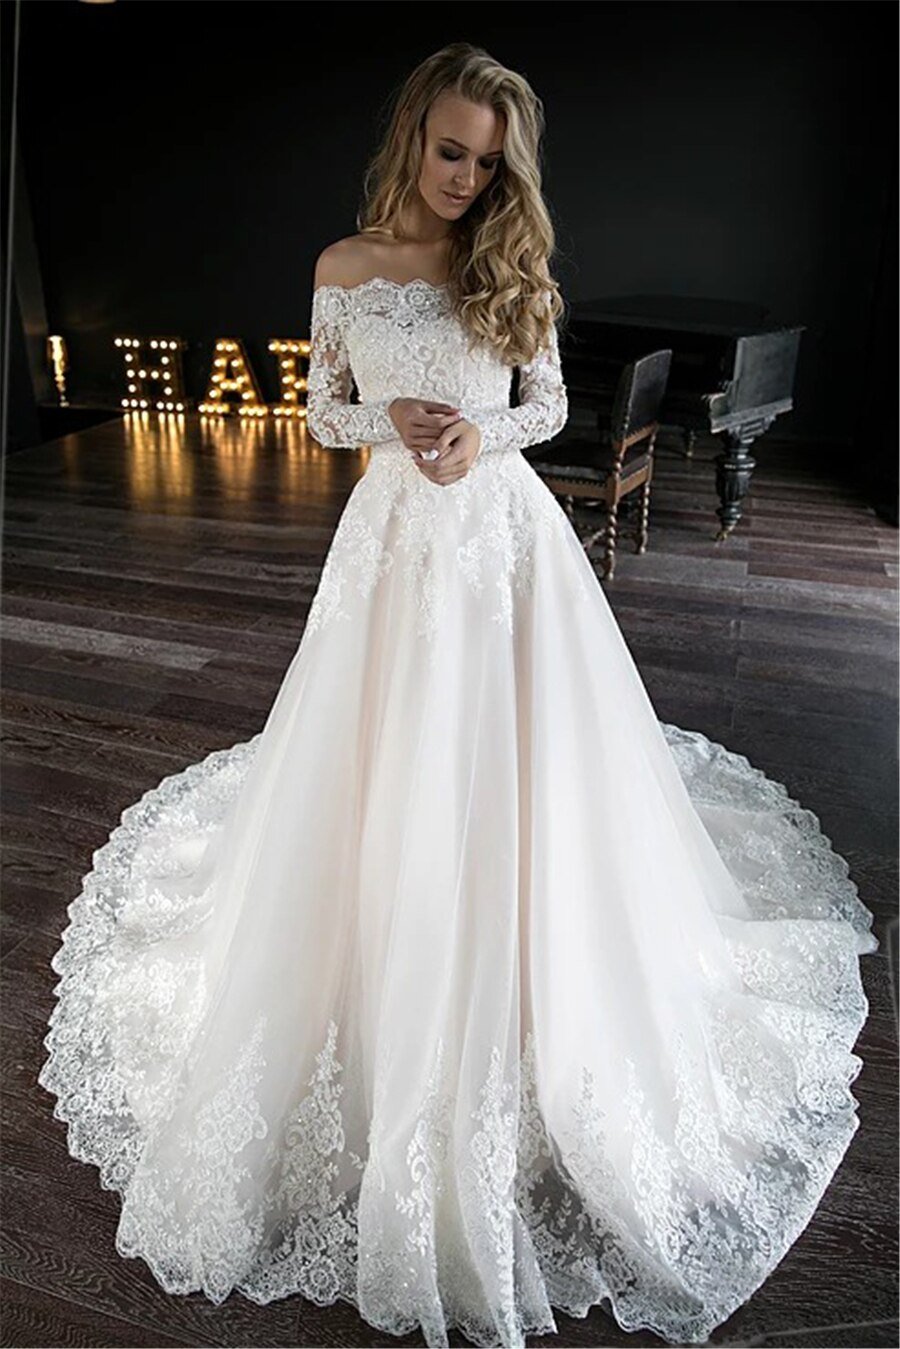 Olivia Bottega Свадебные платья